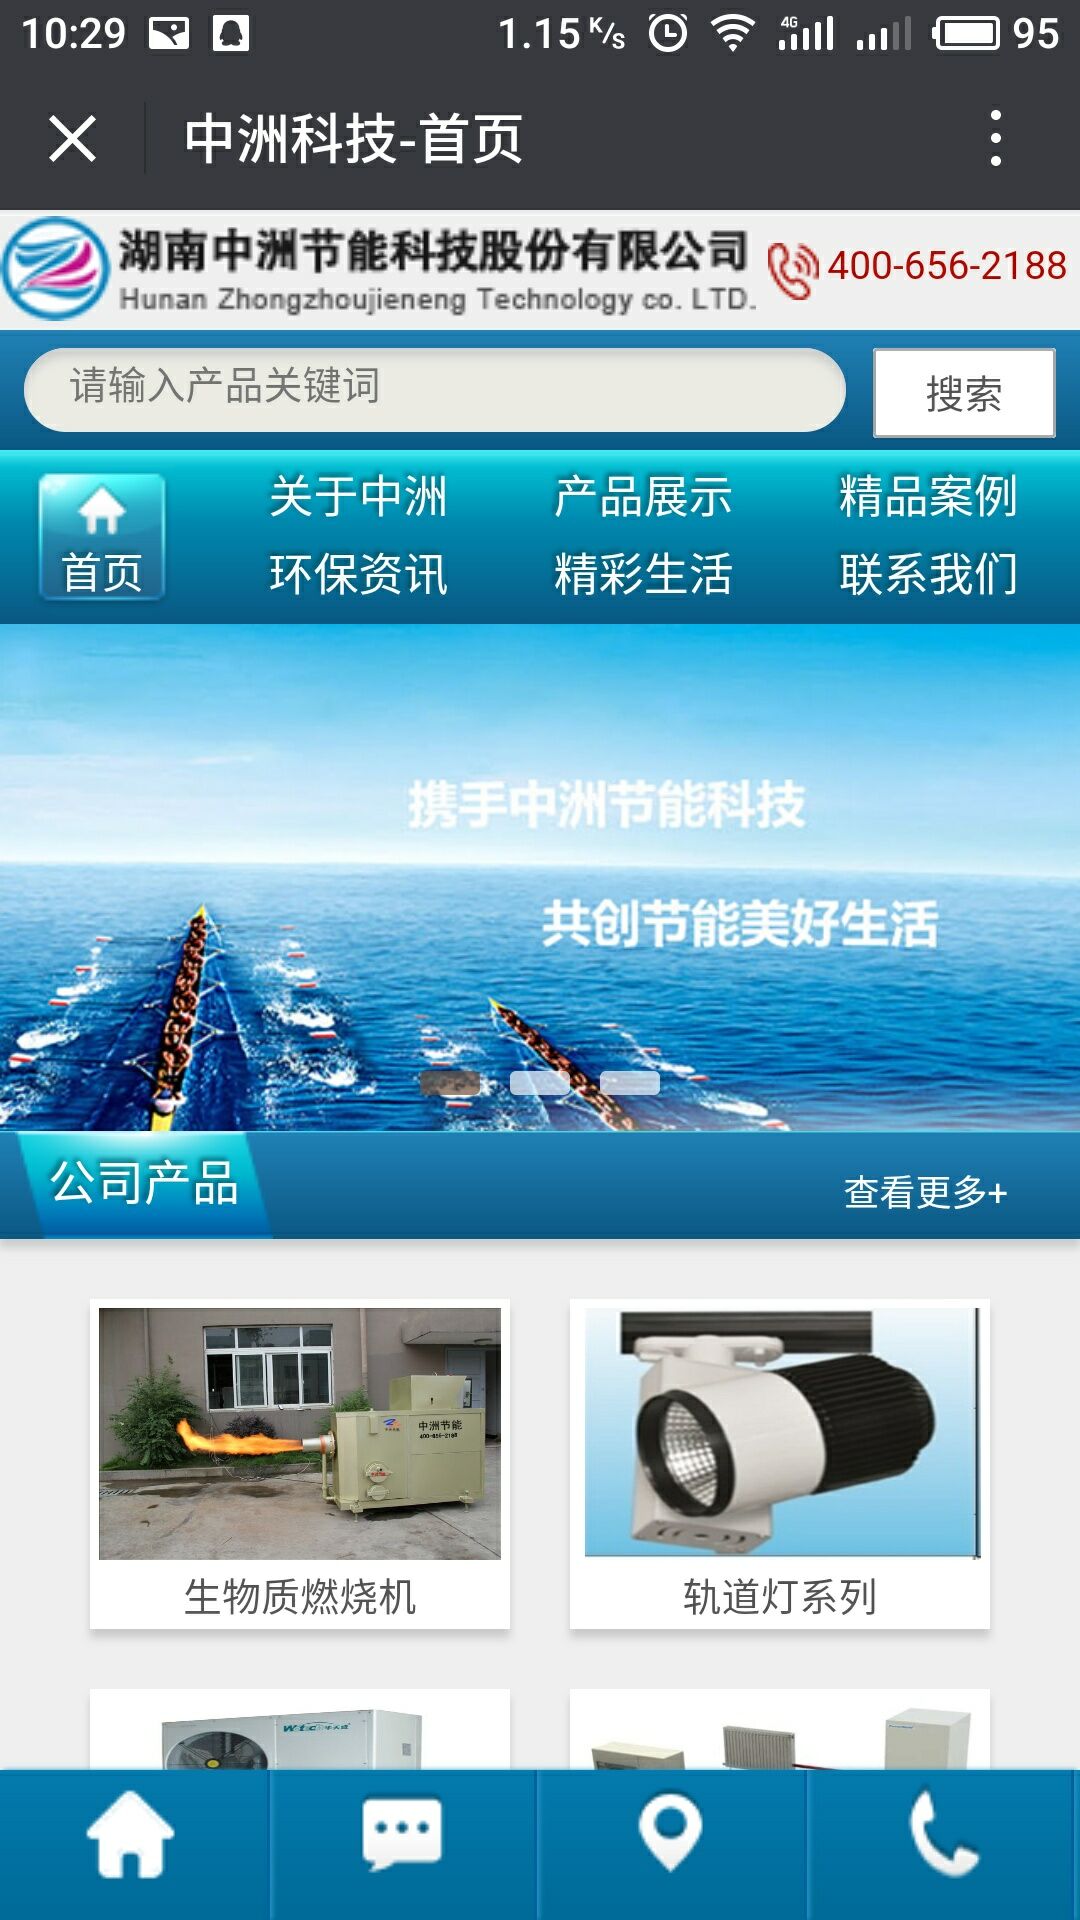 湖南中洲節能科技股份有限公司官網,長沙做網站,長沙微信小程序